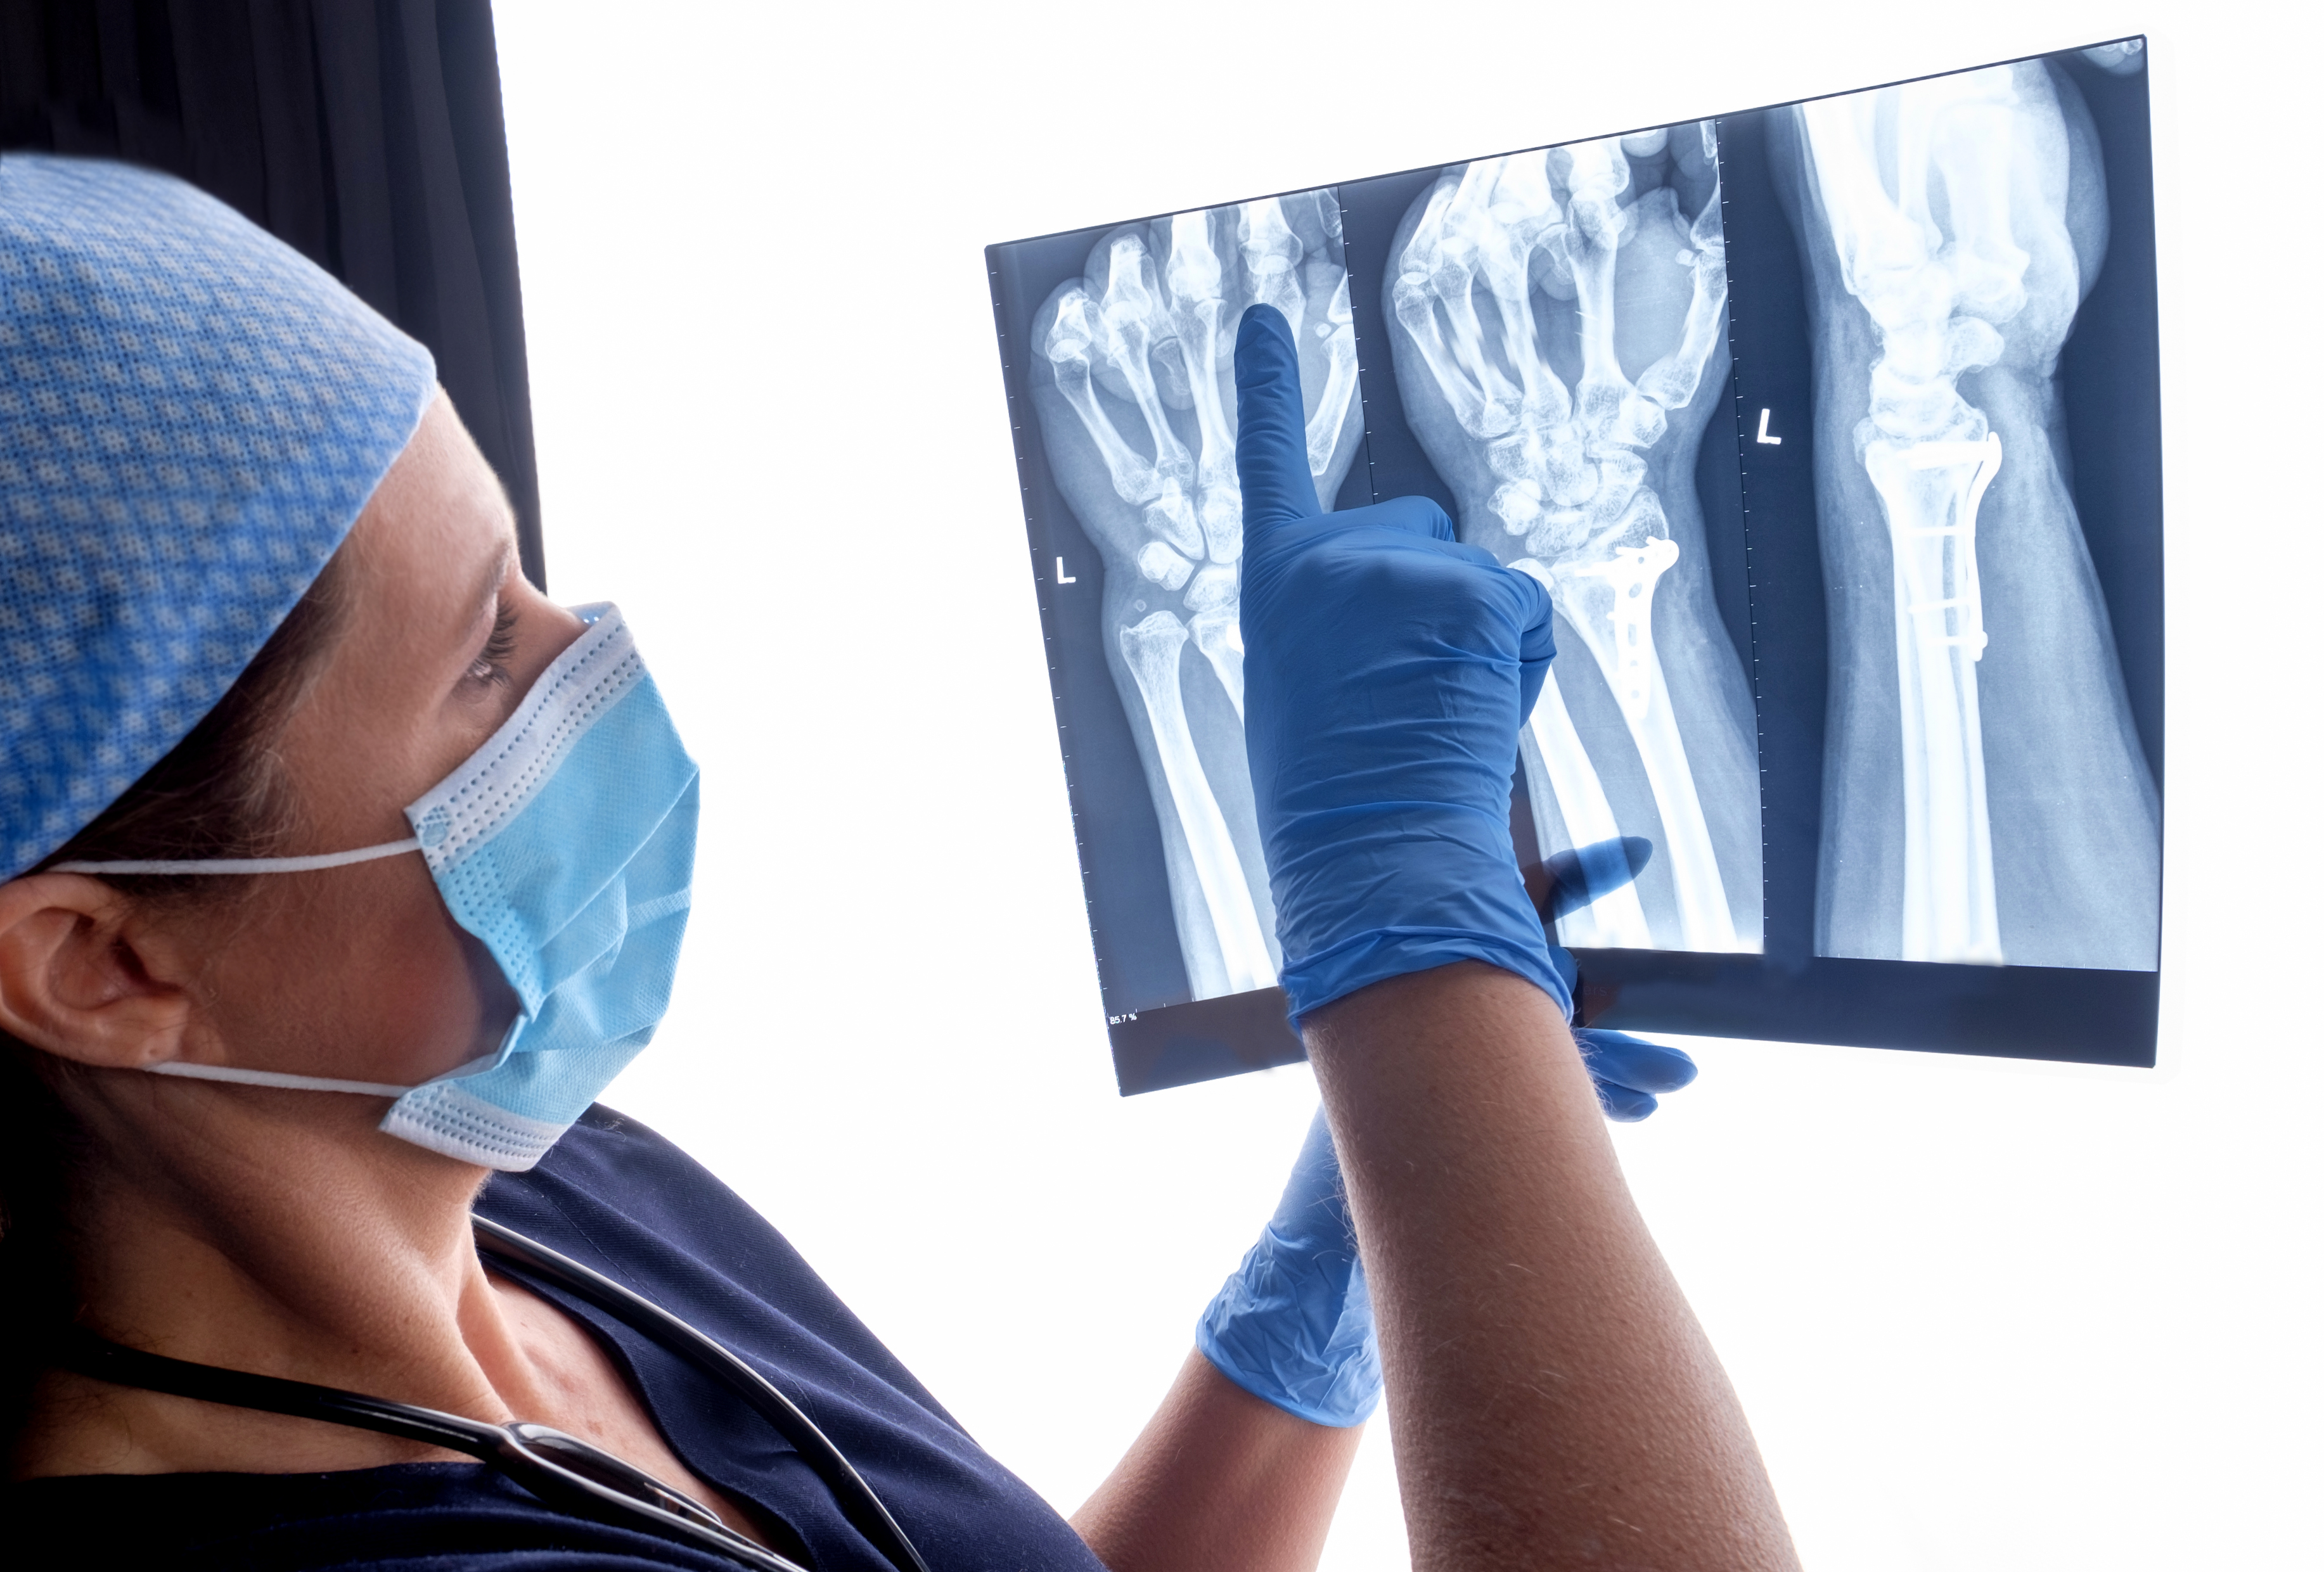 Hand injury image